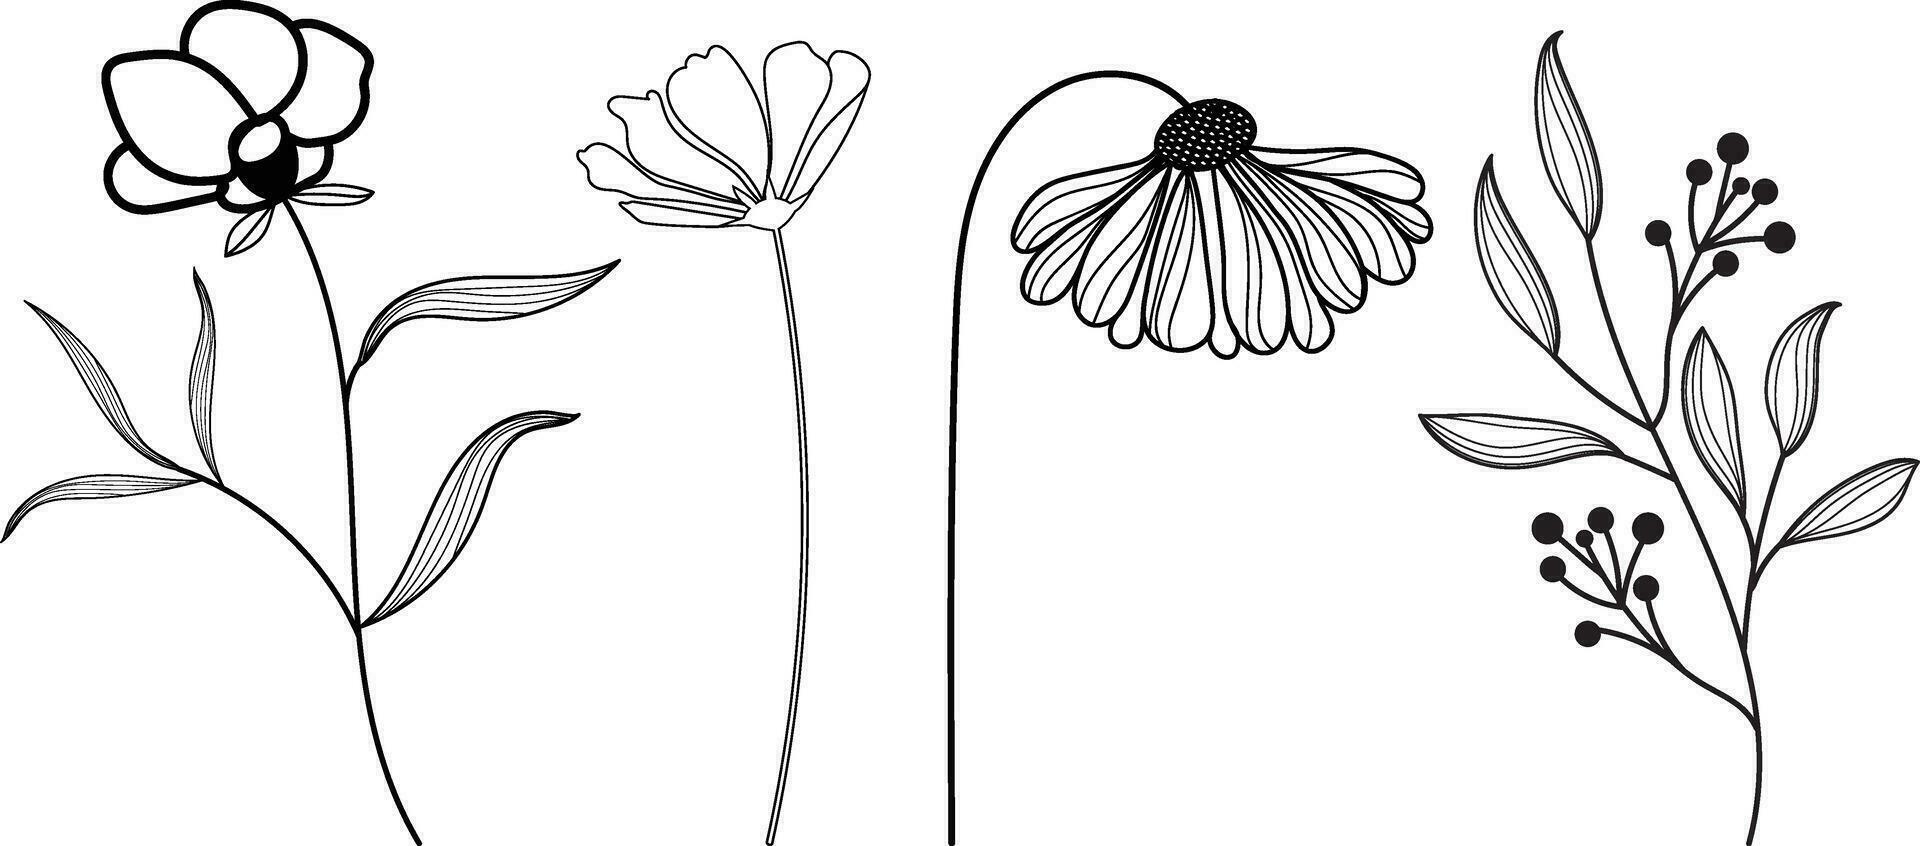 blomma ikon. ritad för hand enkel svart översikt vektor illustration klämma konst i klotter stil, isolerat på en vit bakgrund